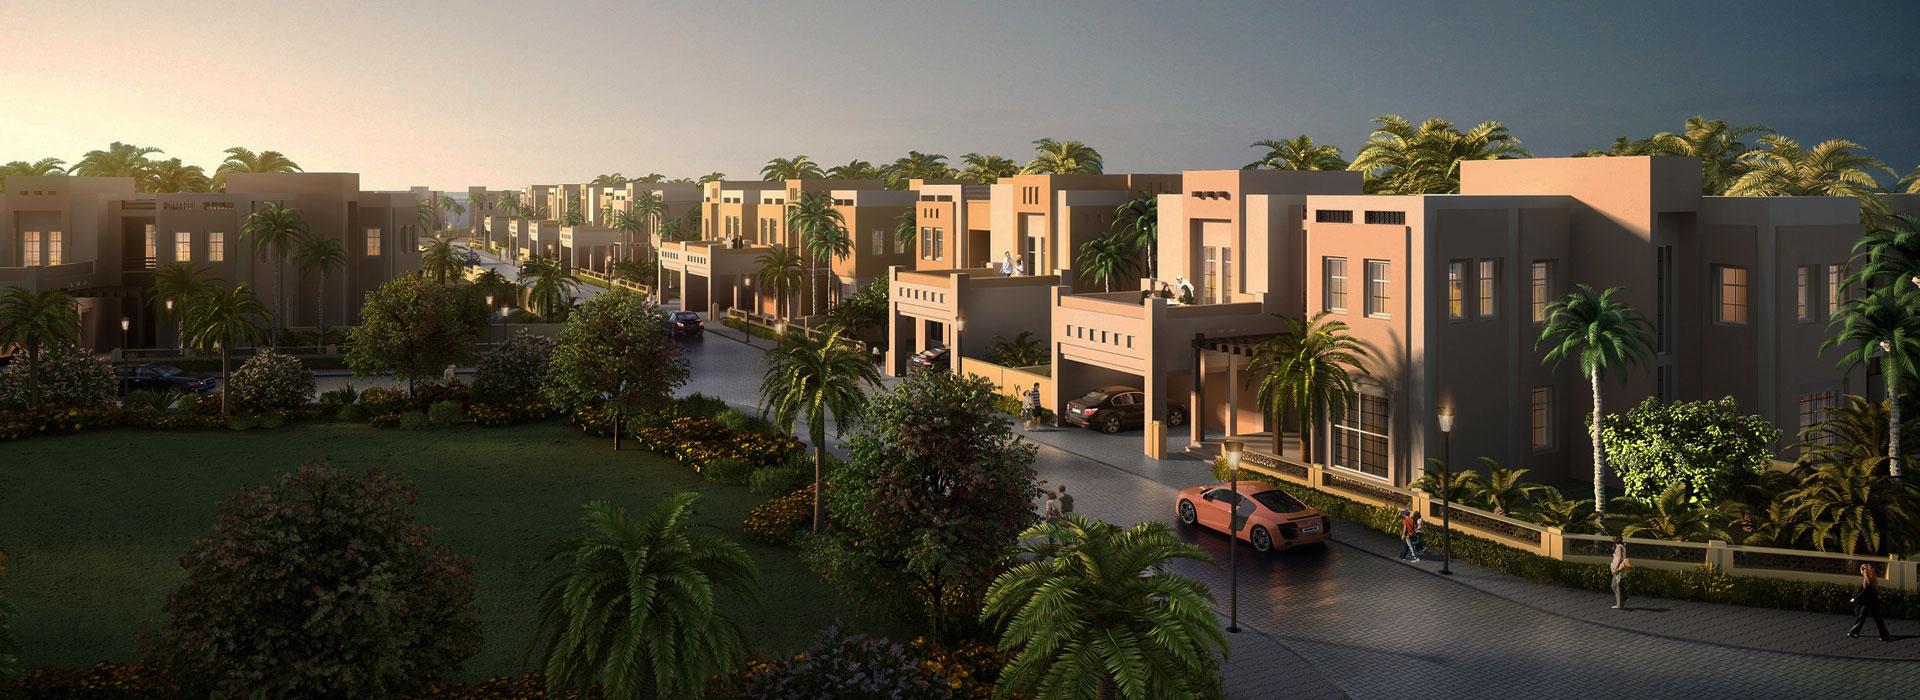 Villas For Sale in Dubai - Blue Water Real Estate